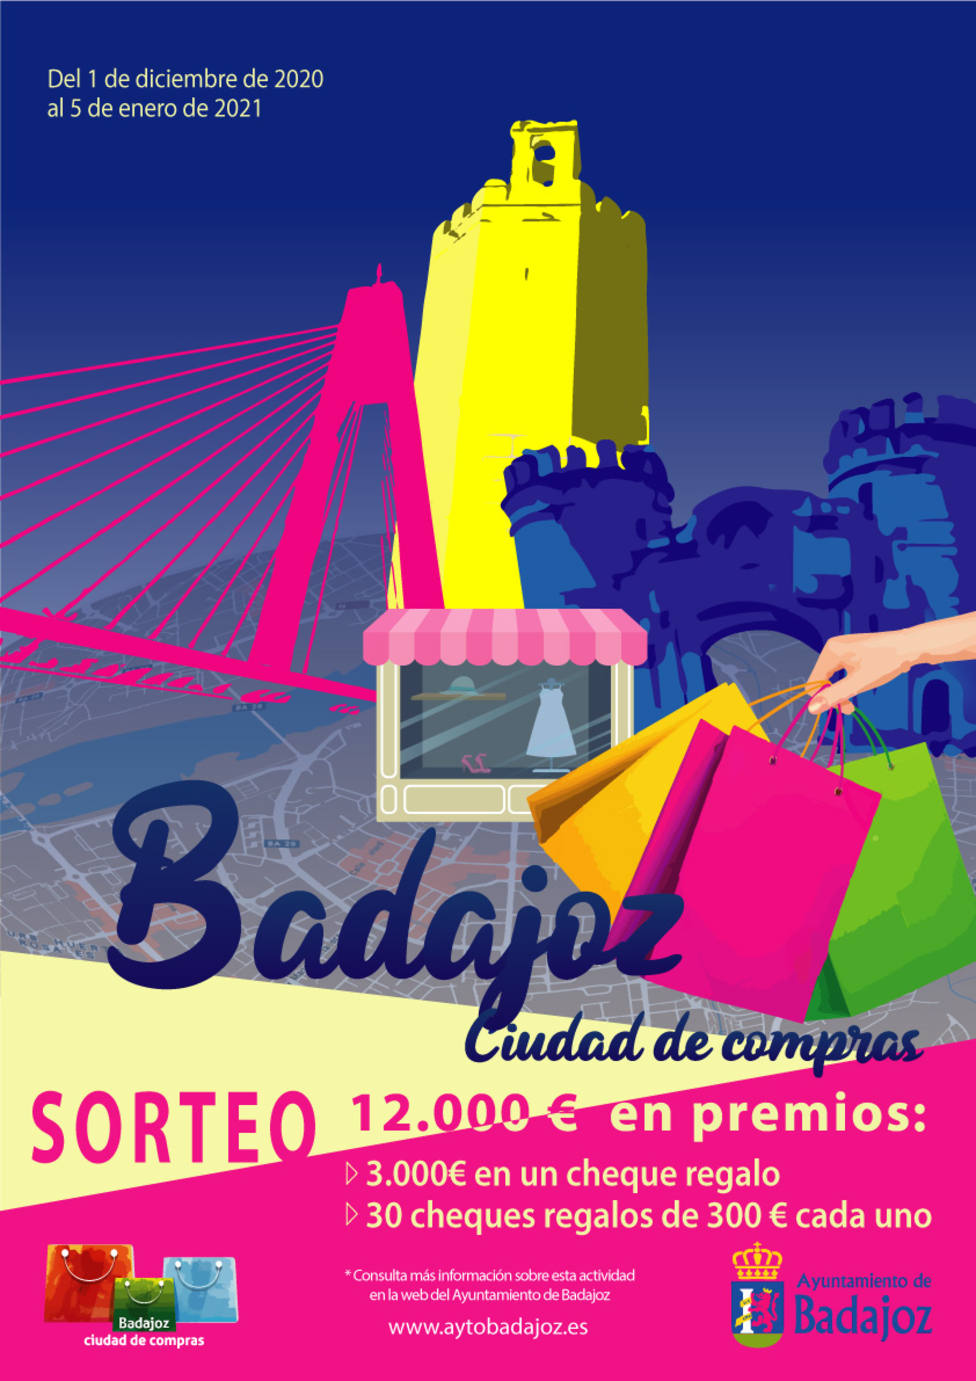 Badajoz ciudad de compras